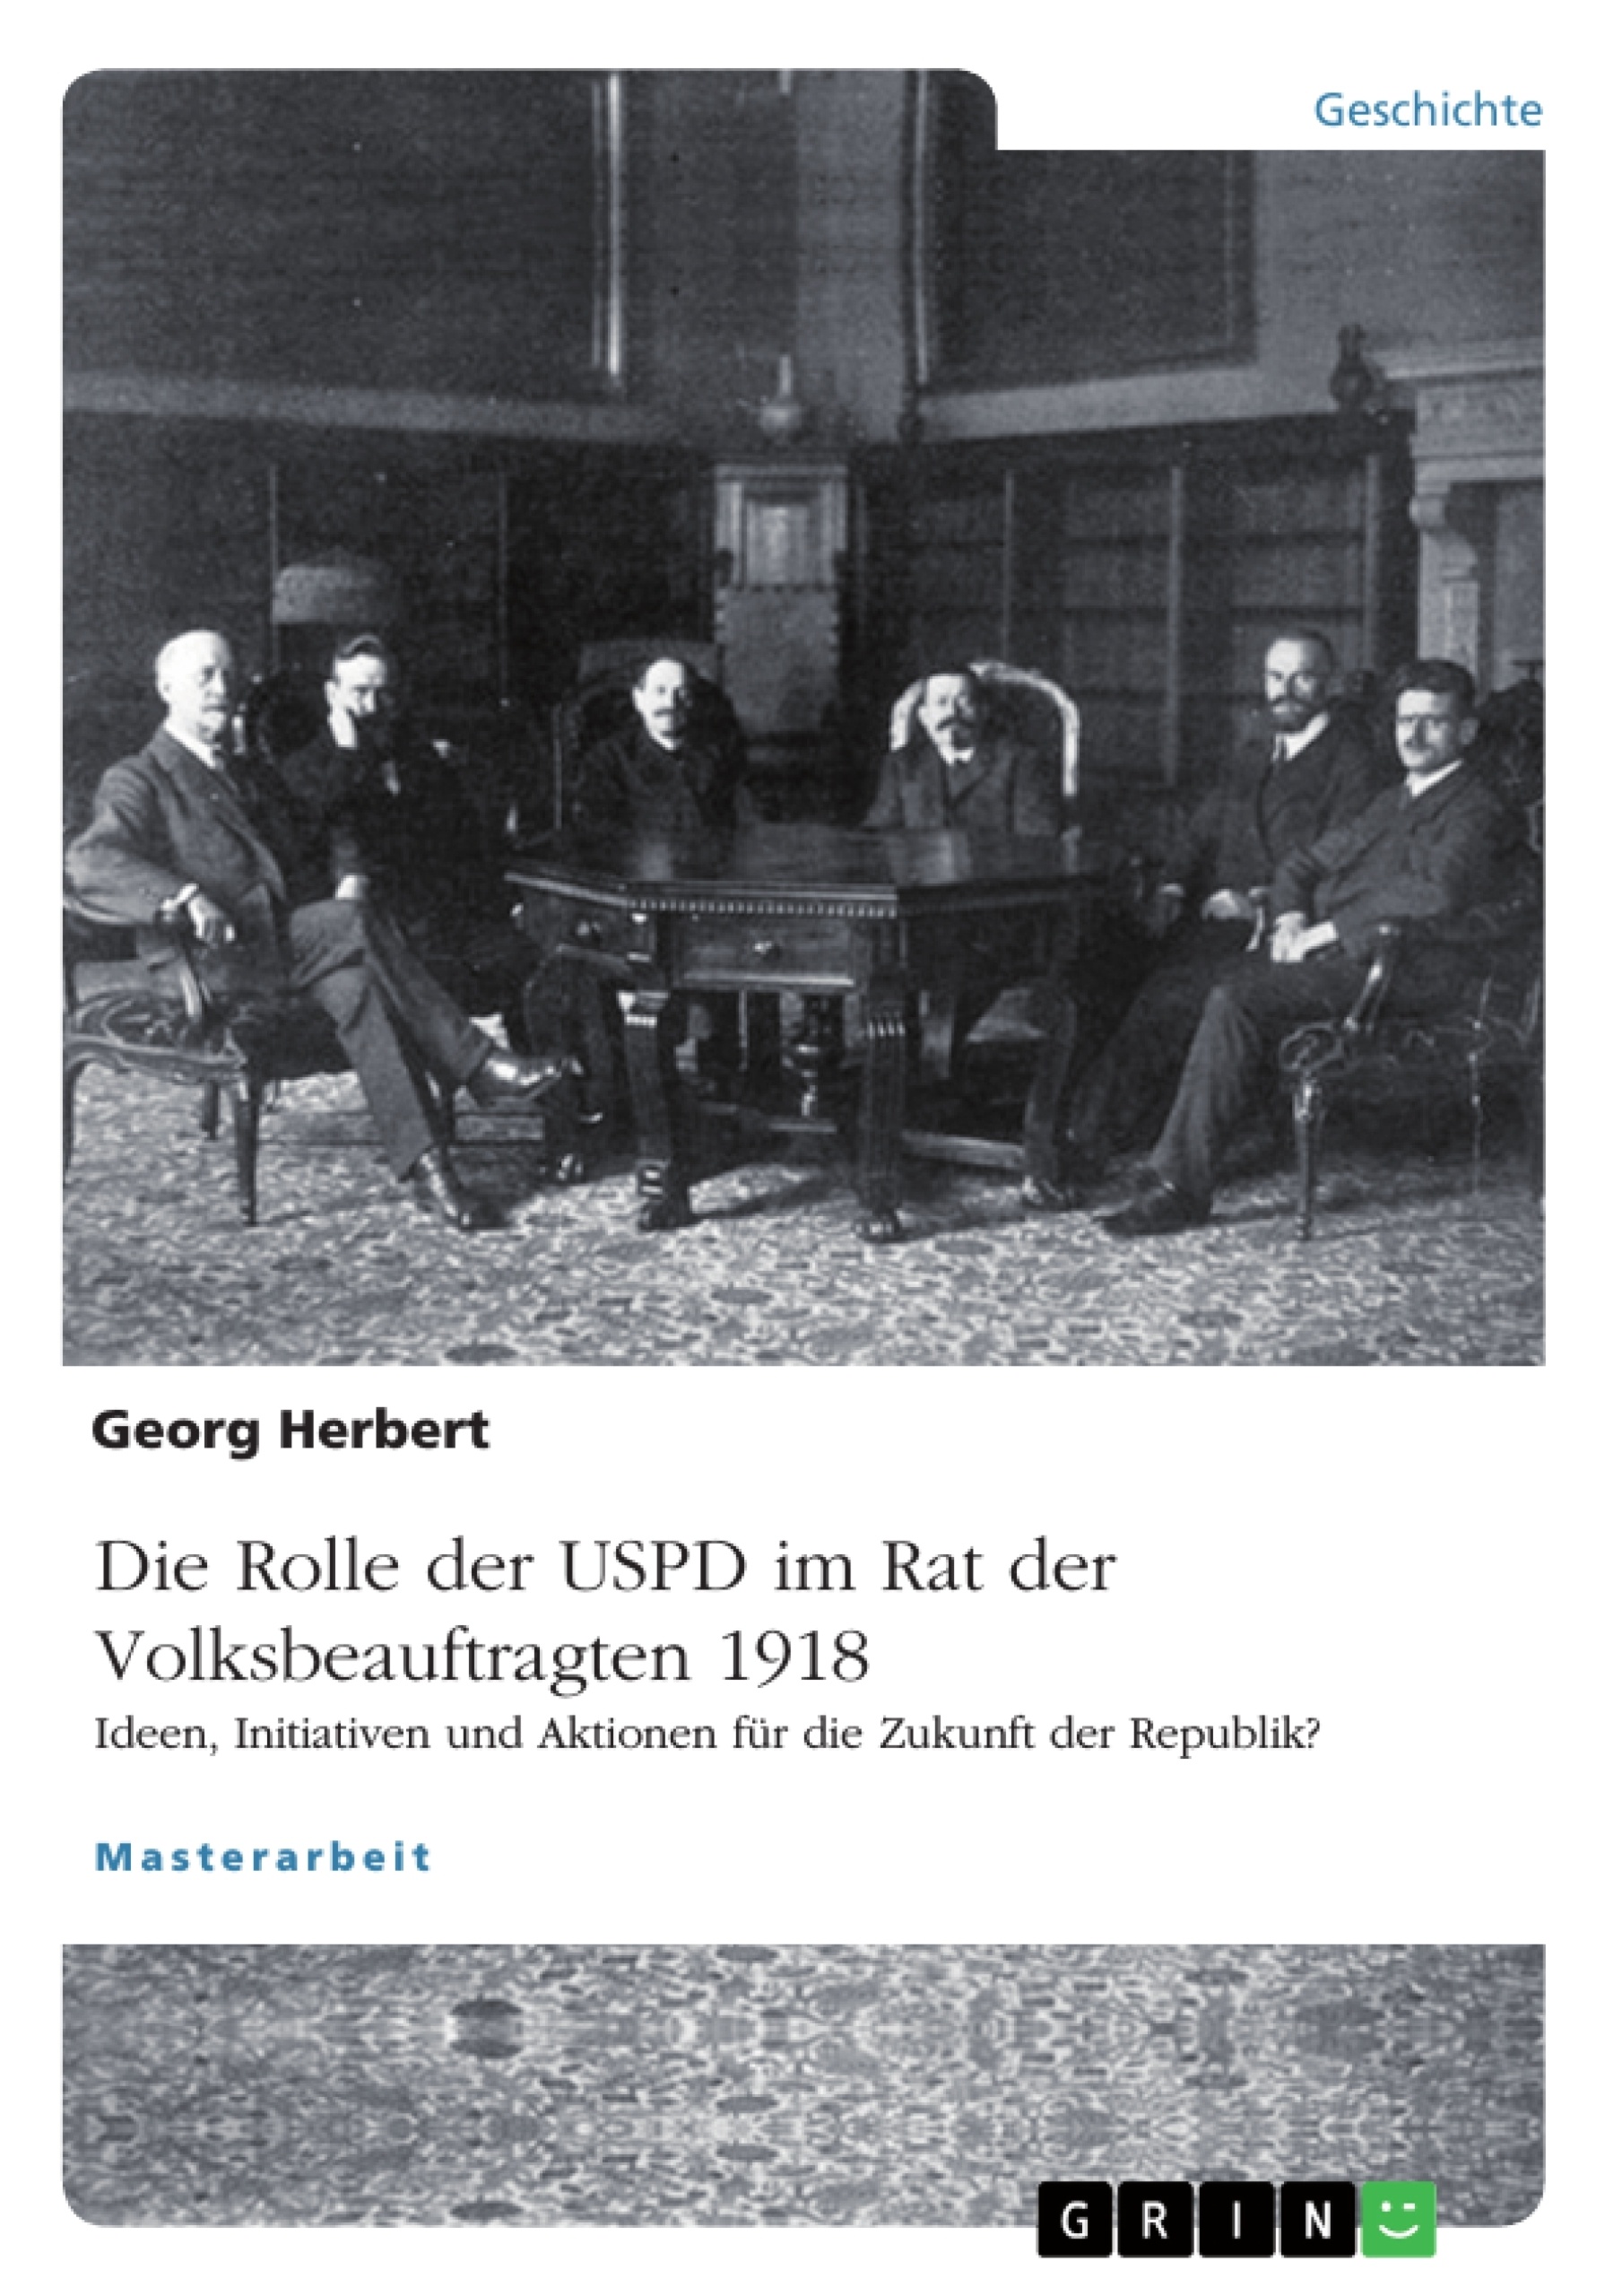 Title: Die USPD im Rat der Volksbeauftragten 1918